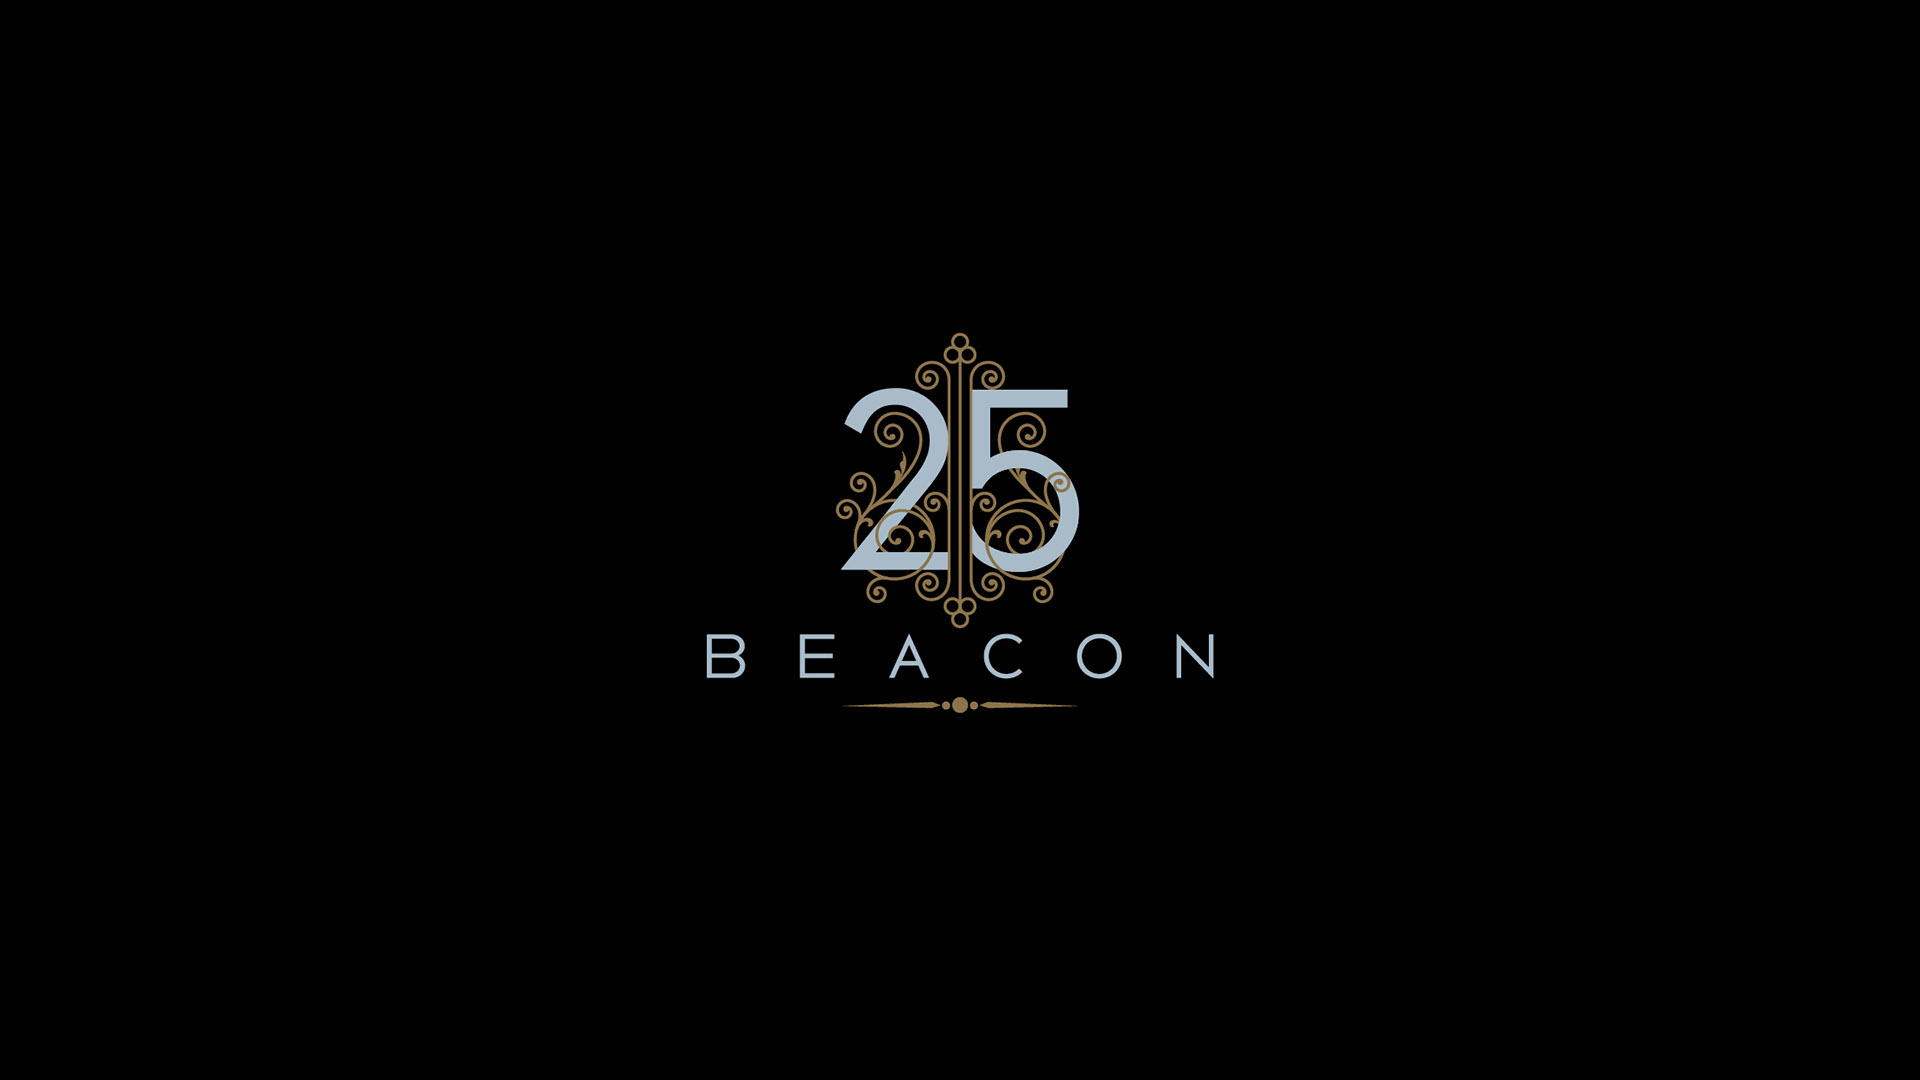 25 beacon logo on black